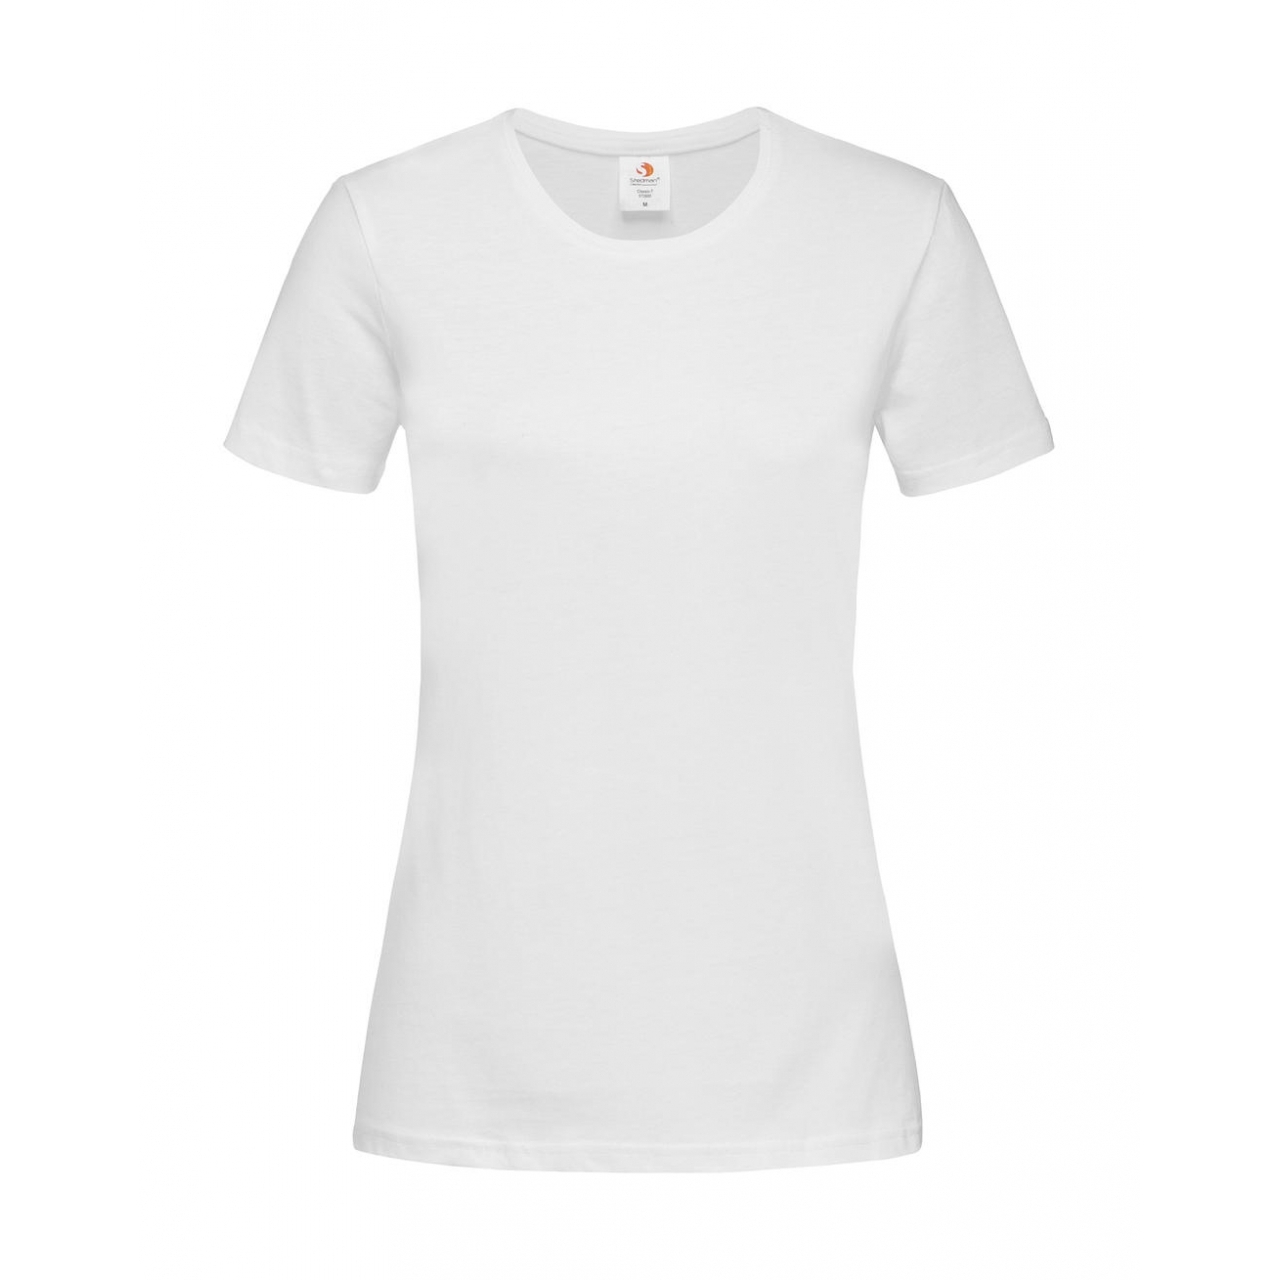 Tričko dámské Stedman Fitted s kulatým výstřihem - bílé, XL